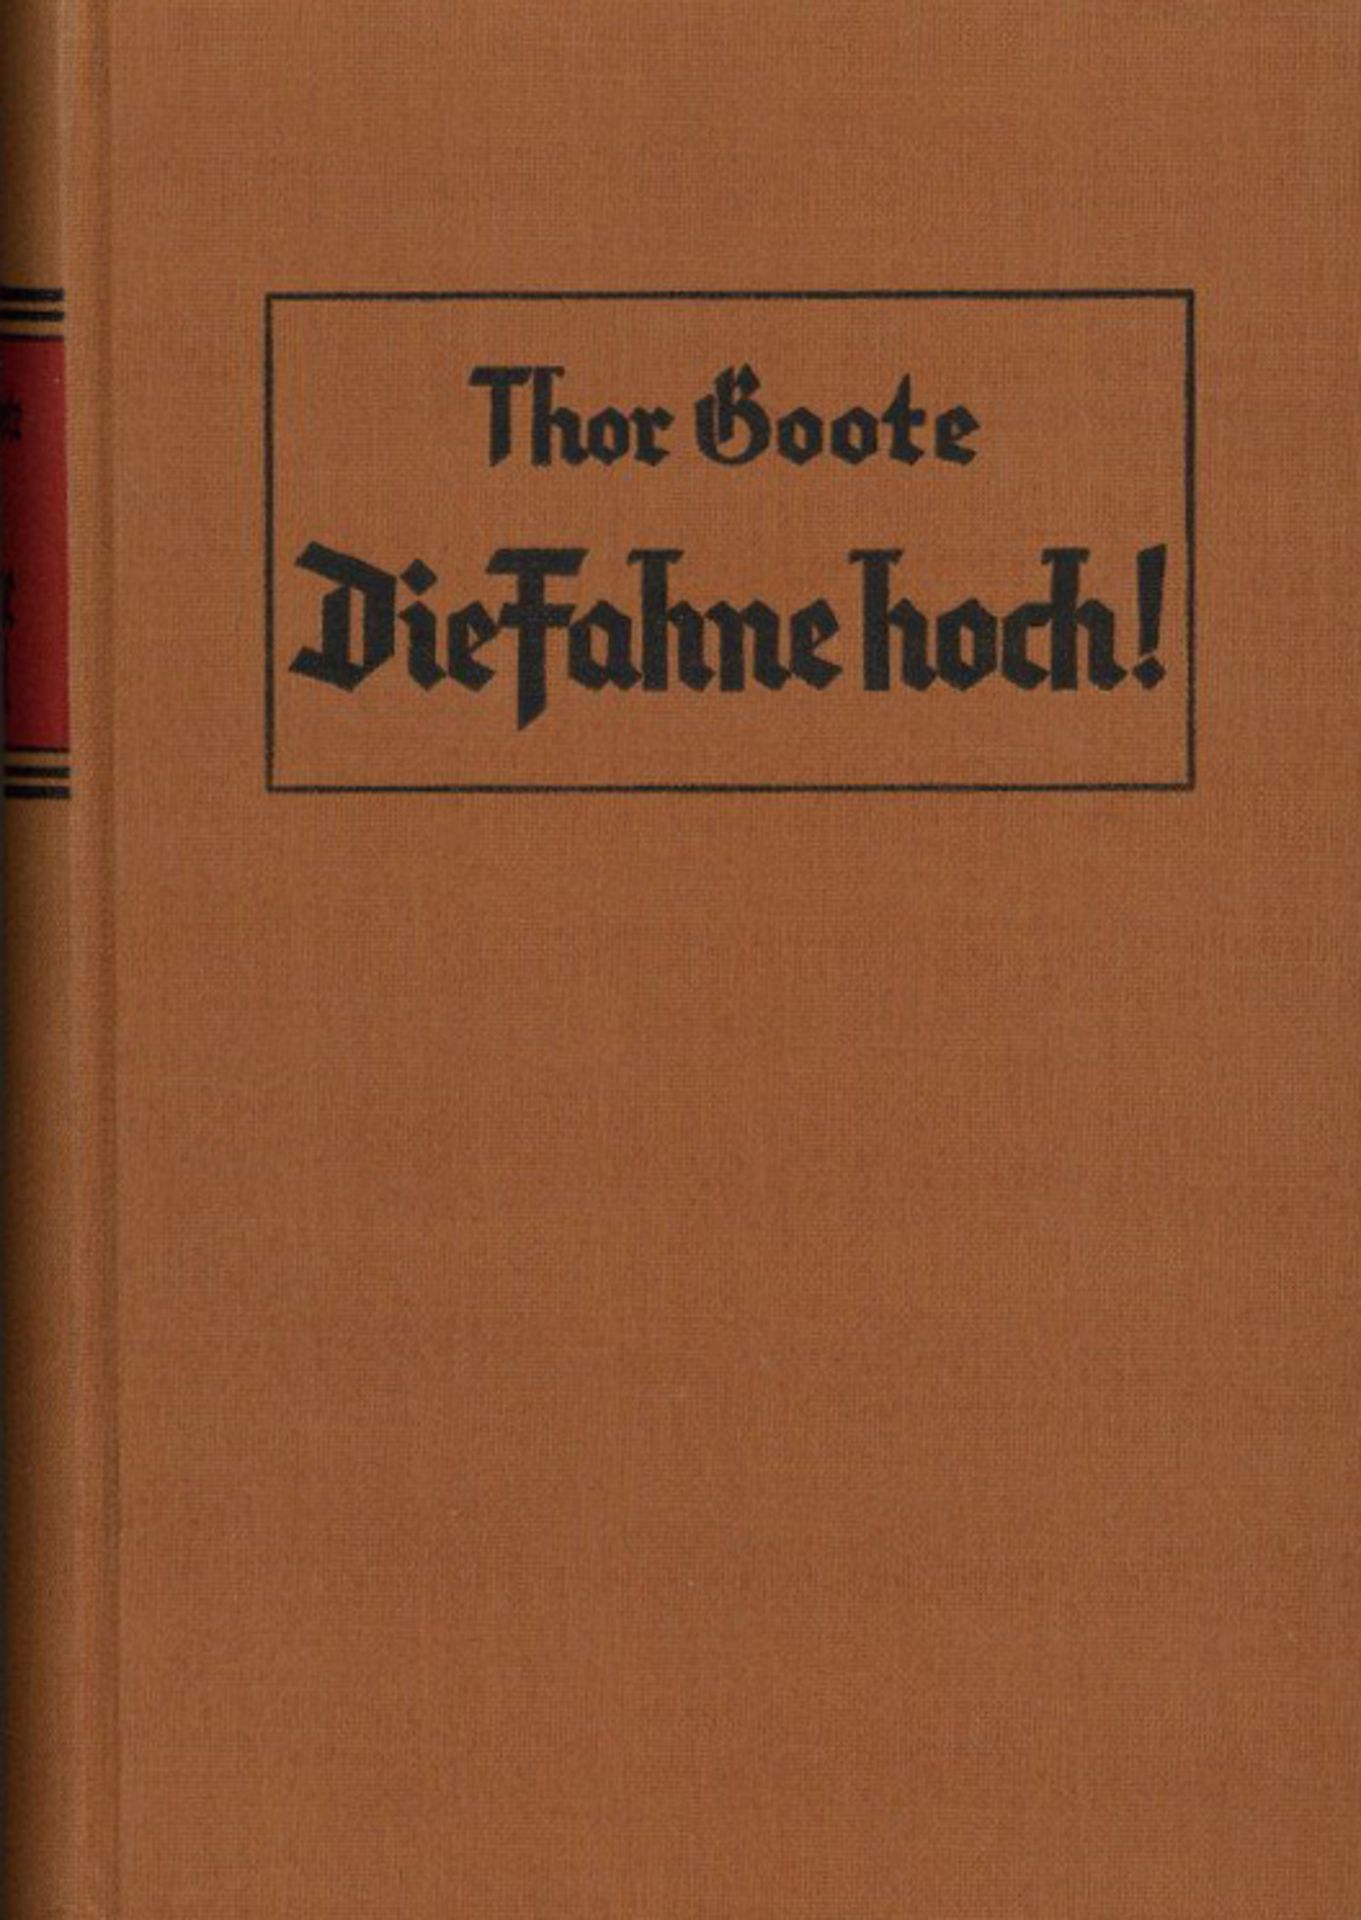 Buch WK II Die Fahne hoch von Goote, Thor 1933 Verlag Zeitgeschichte Berlin 417 S. II